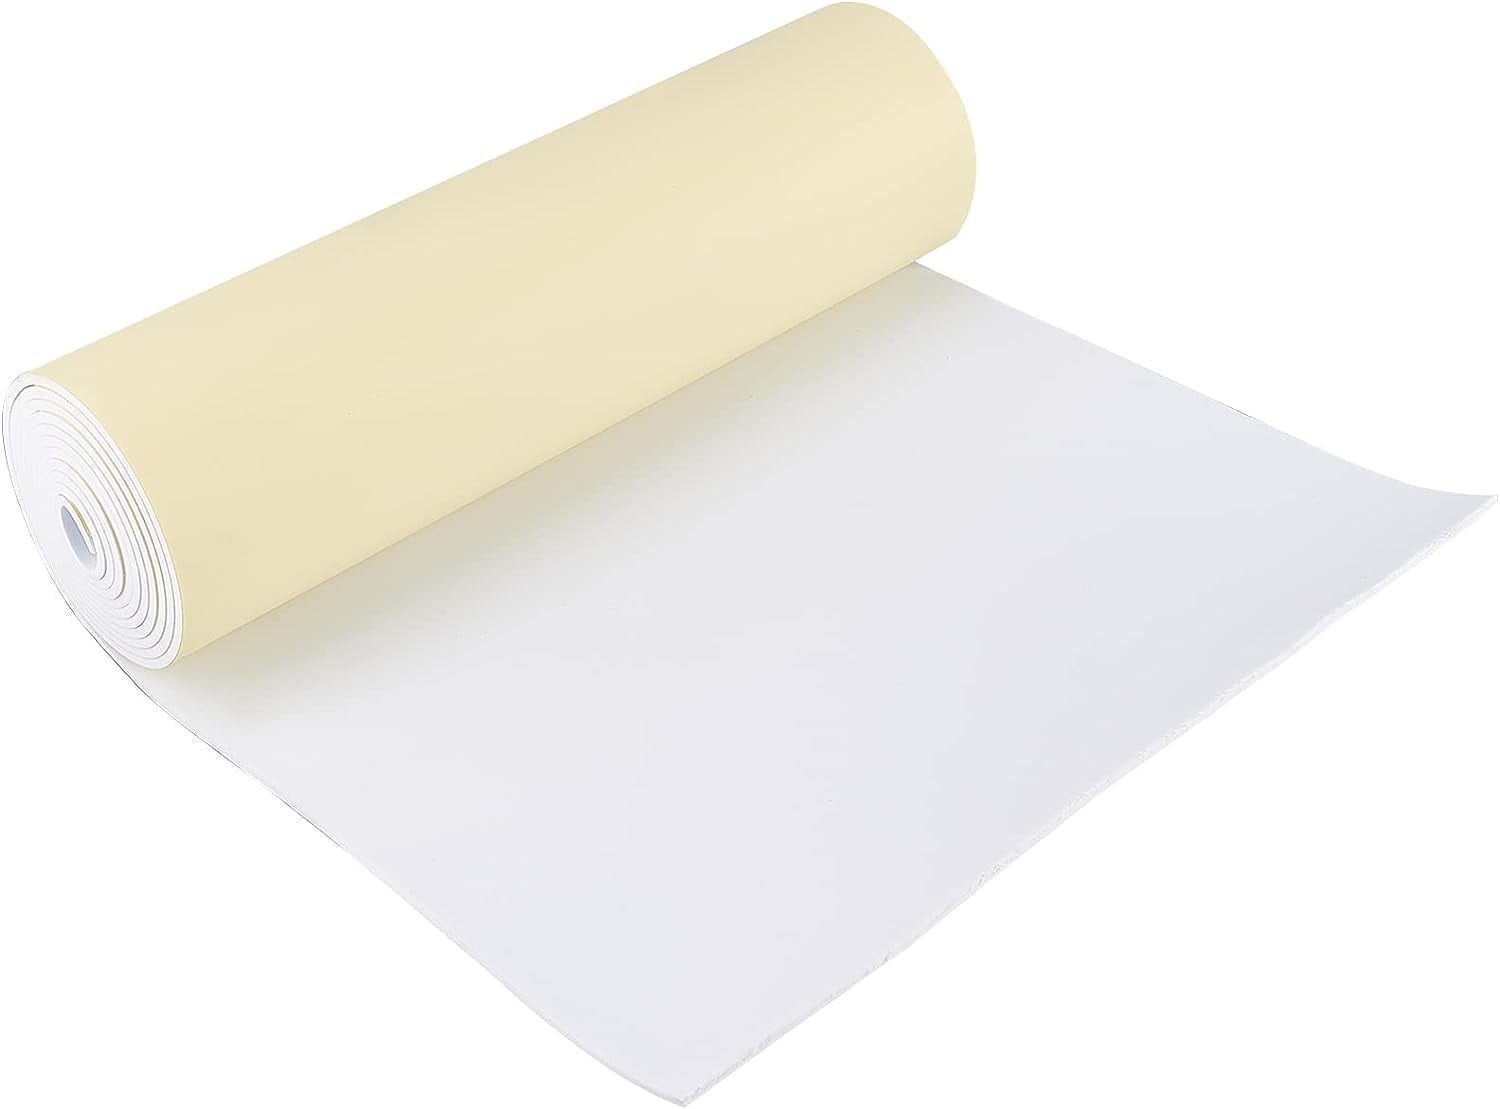 Polyethylene Foam 16X12X2Inch Polyethylene Foam Sheet Thick Foam Padding  Foam Inserts for Crafts Polyethylene Foam Pad 